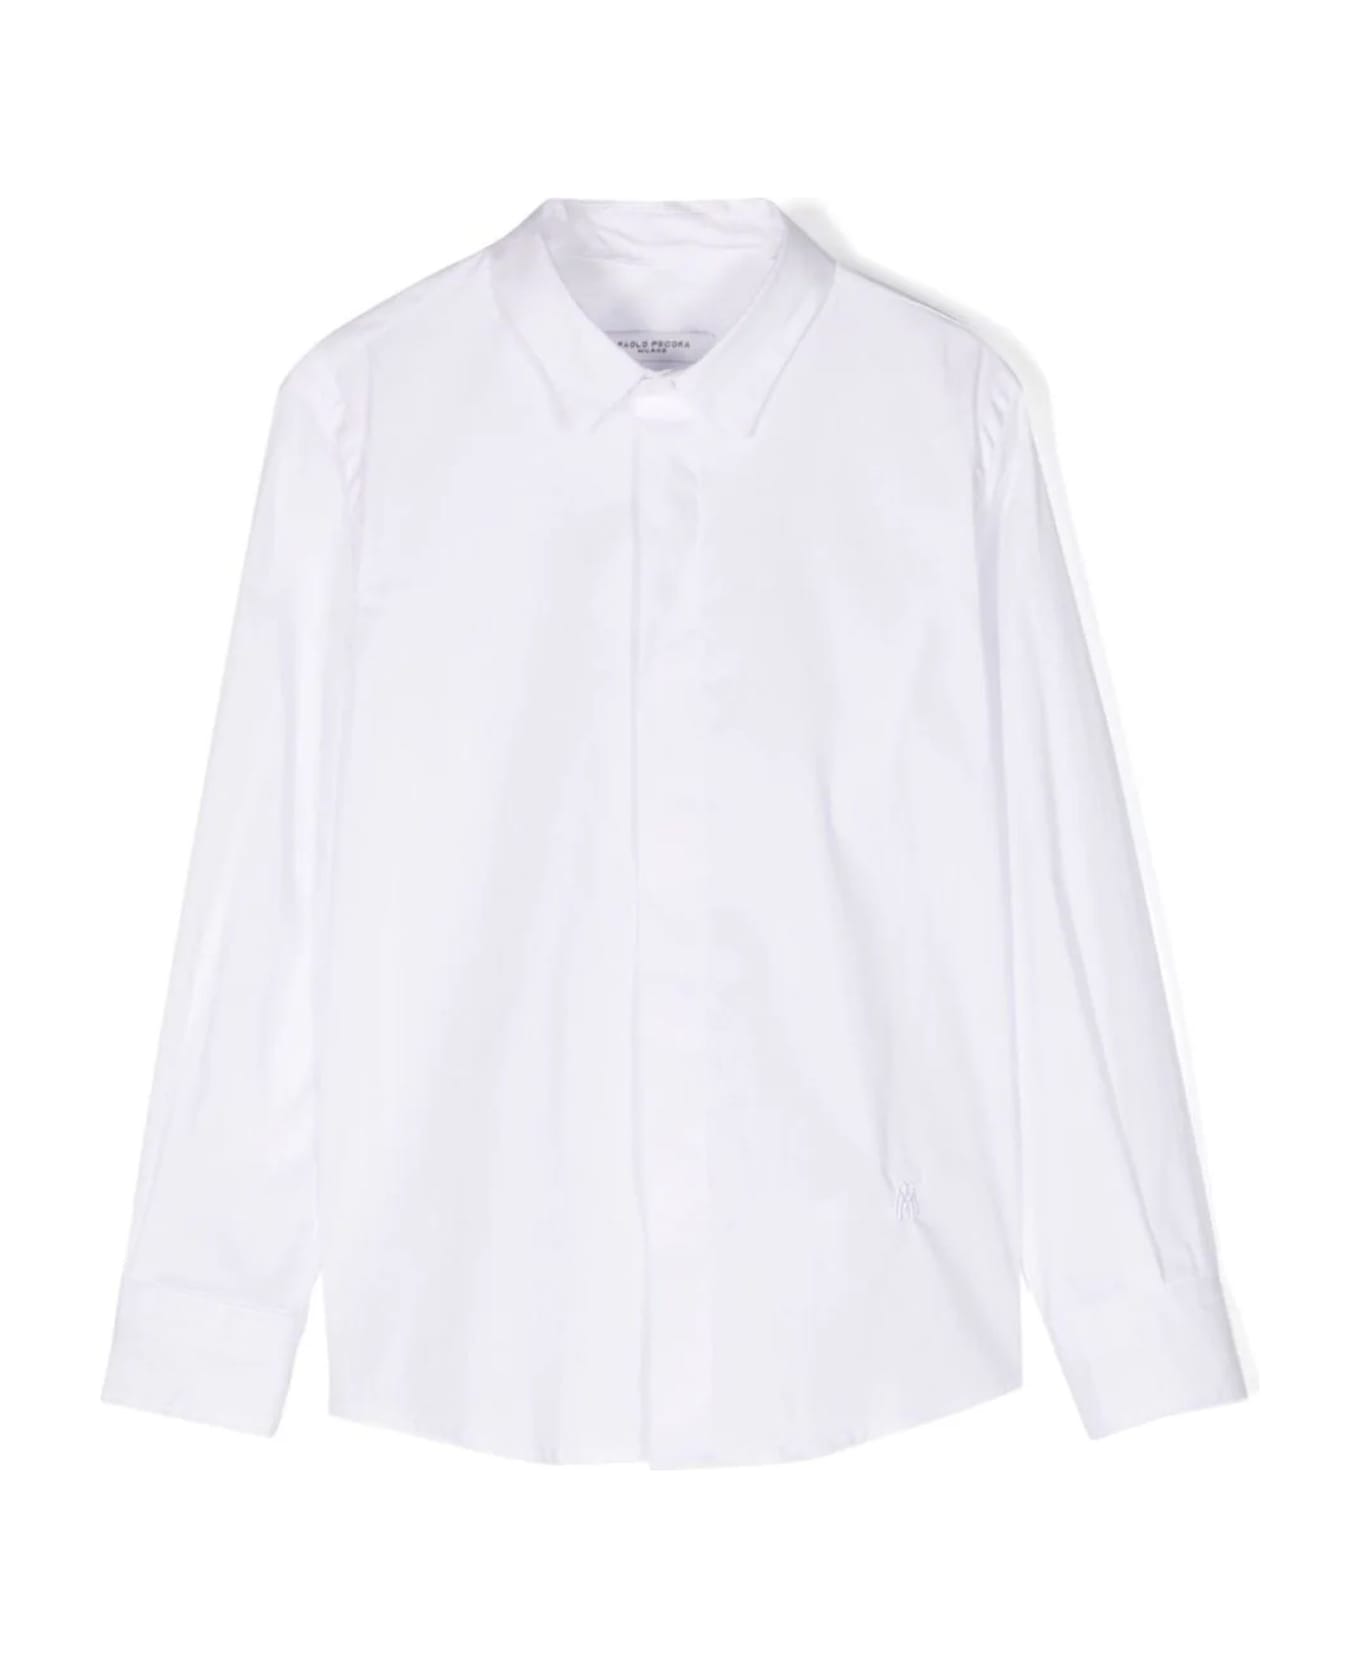 Paolo Pecora Shirts White - White シャツ